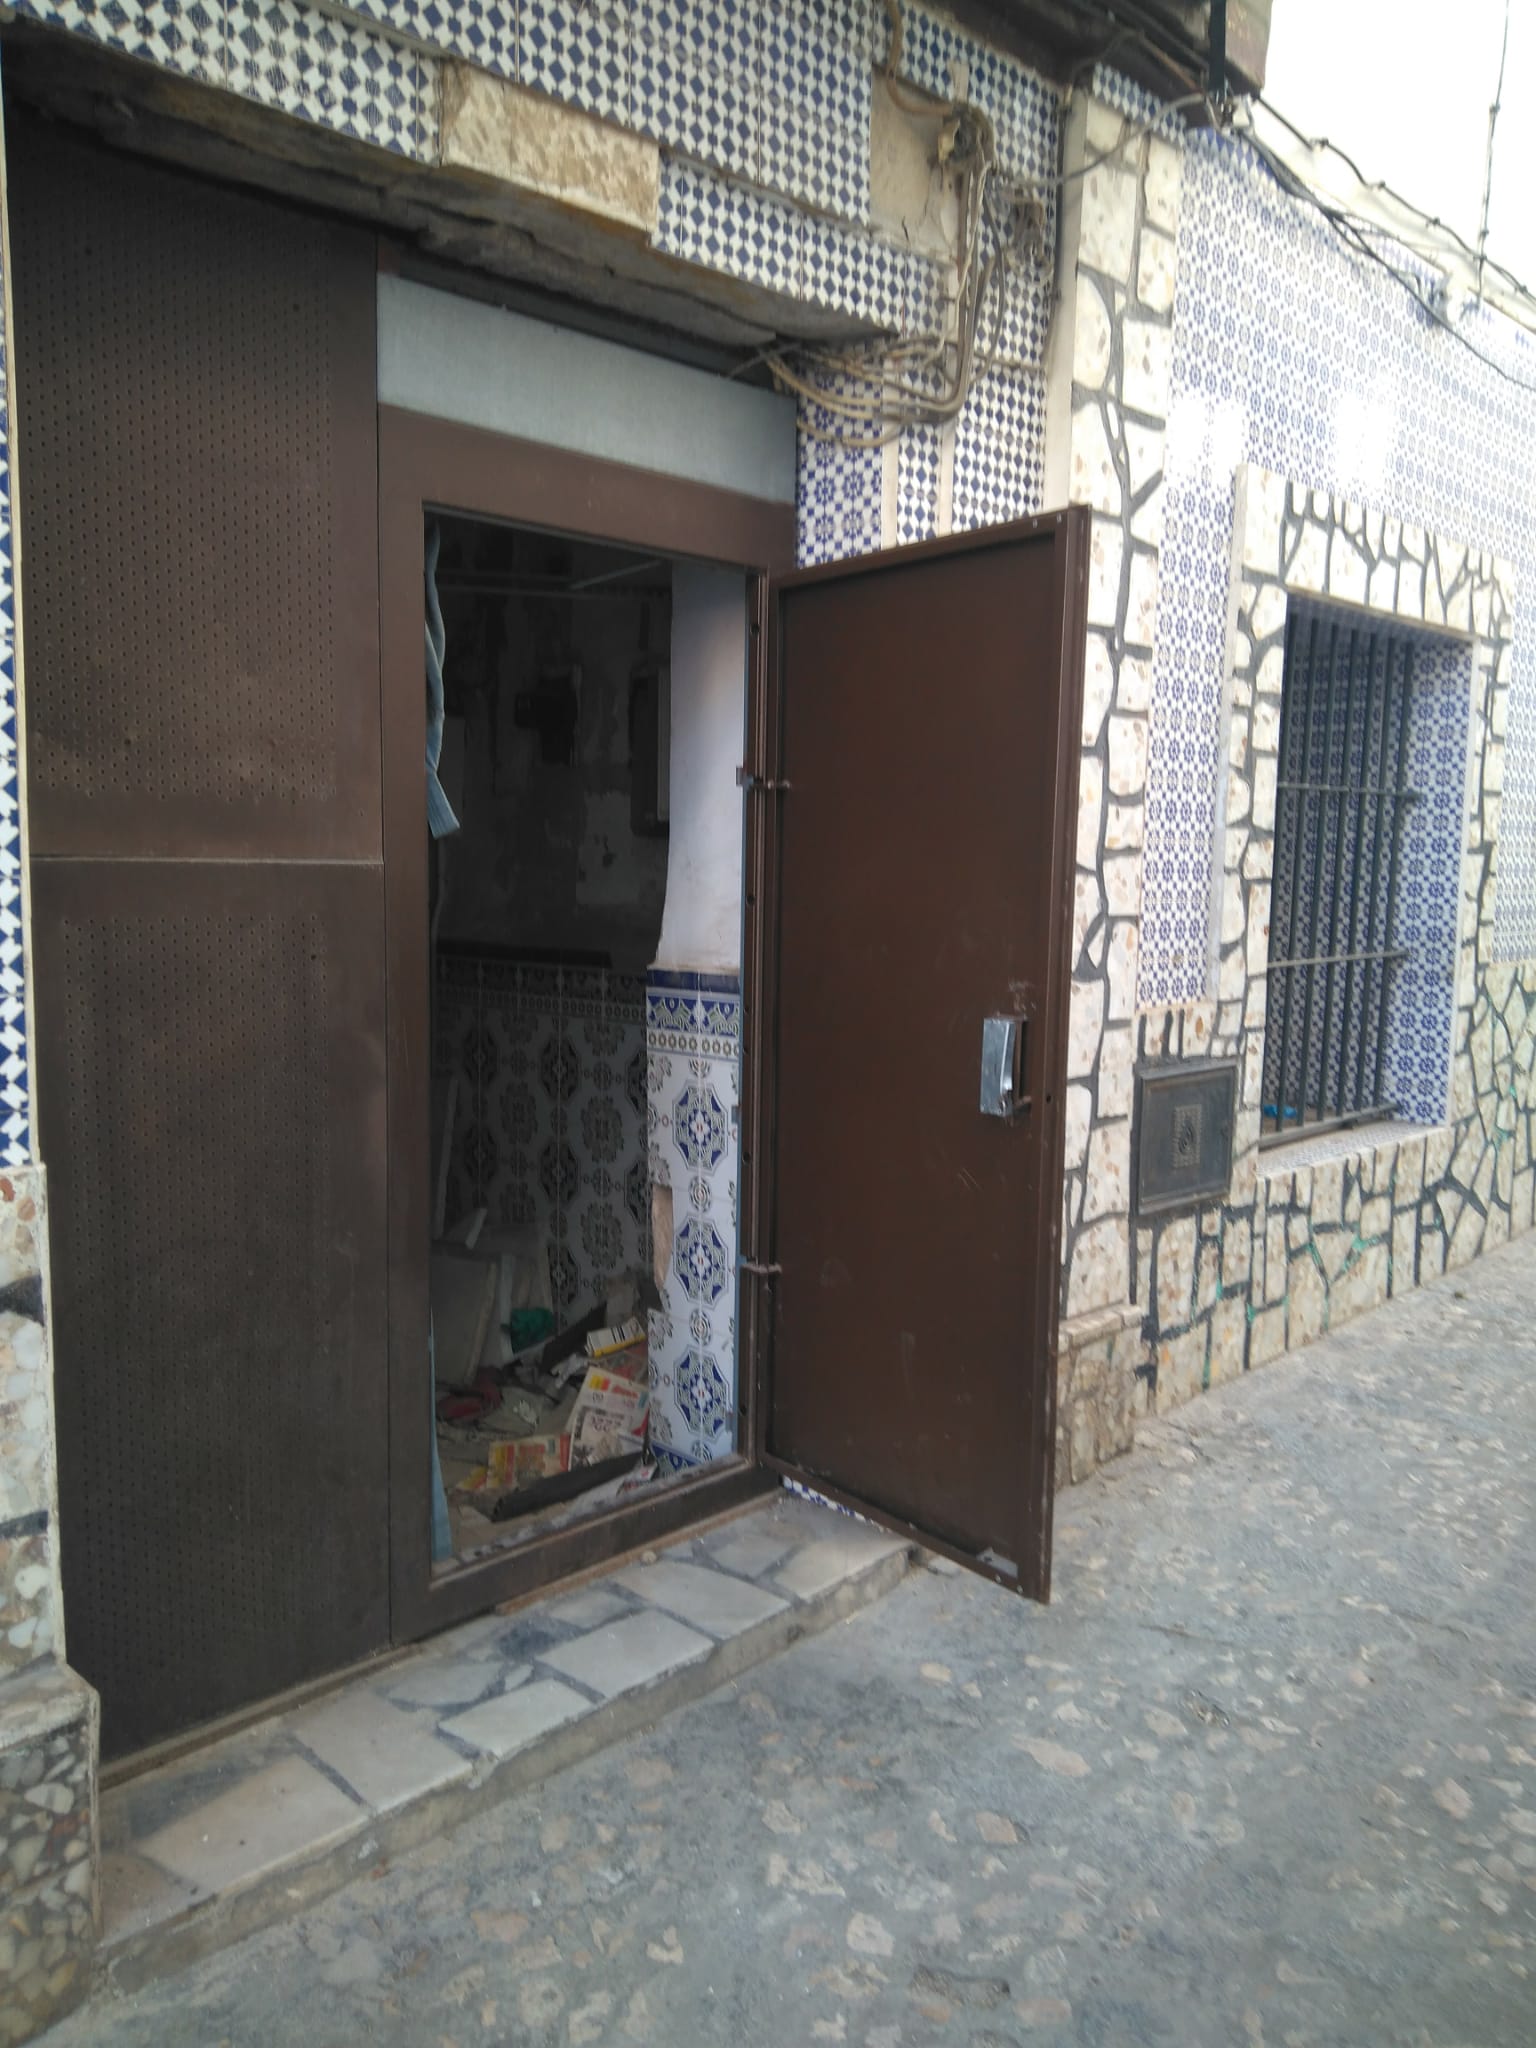 Una puerta 'antiocupa' reventada en el número 3 de la calle Salvador.